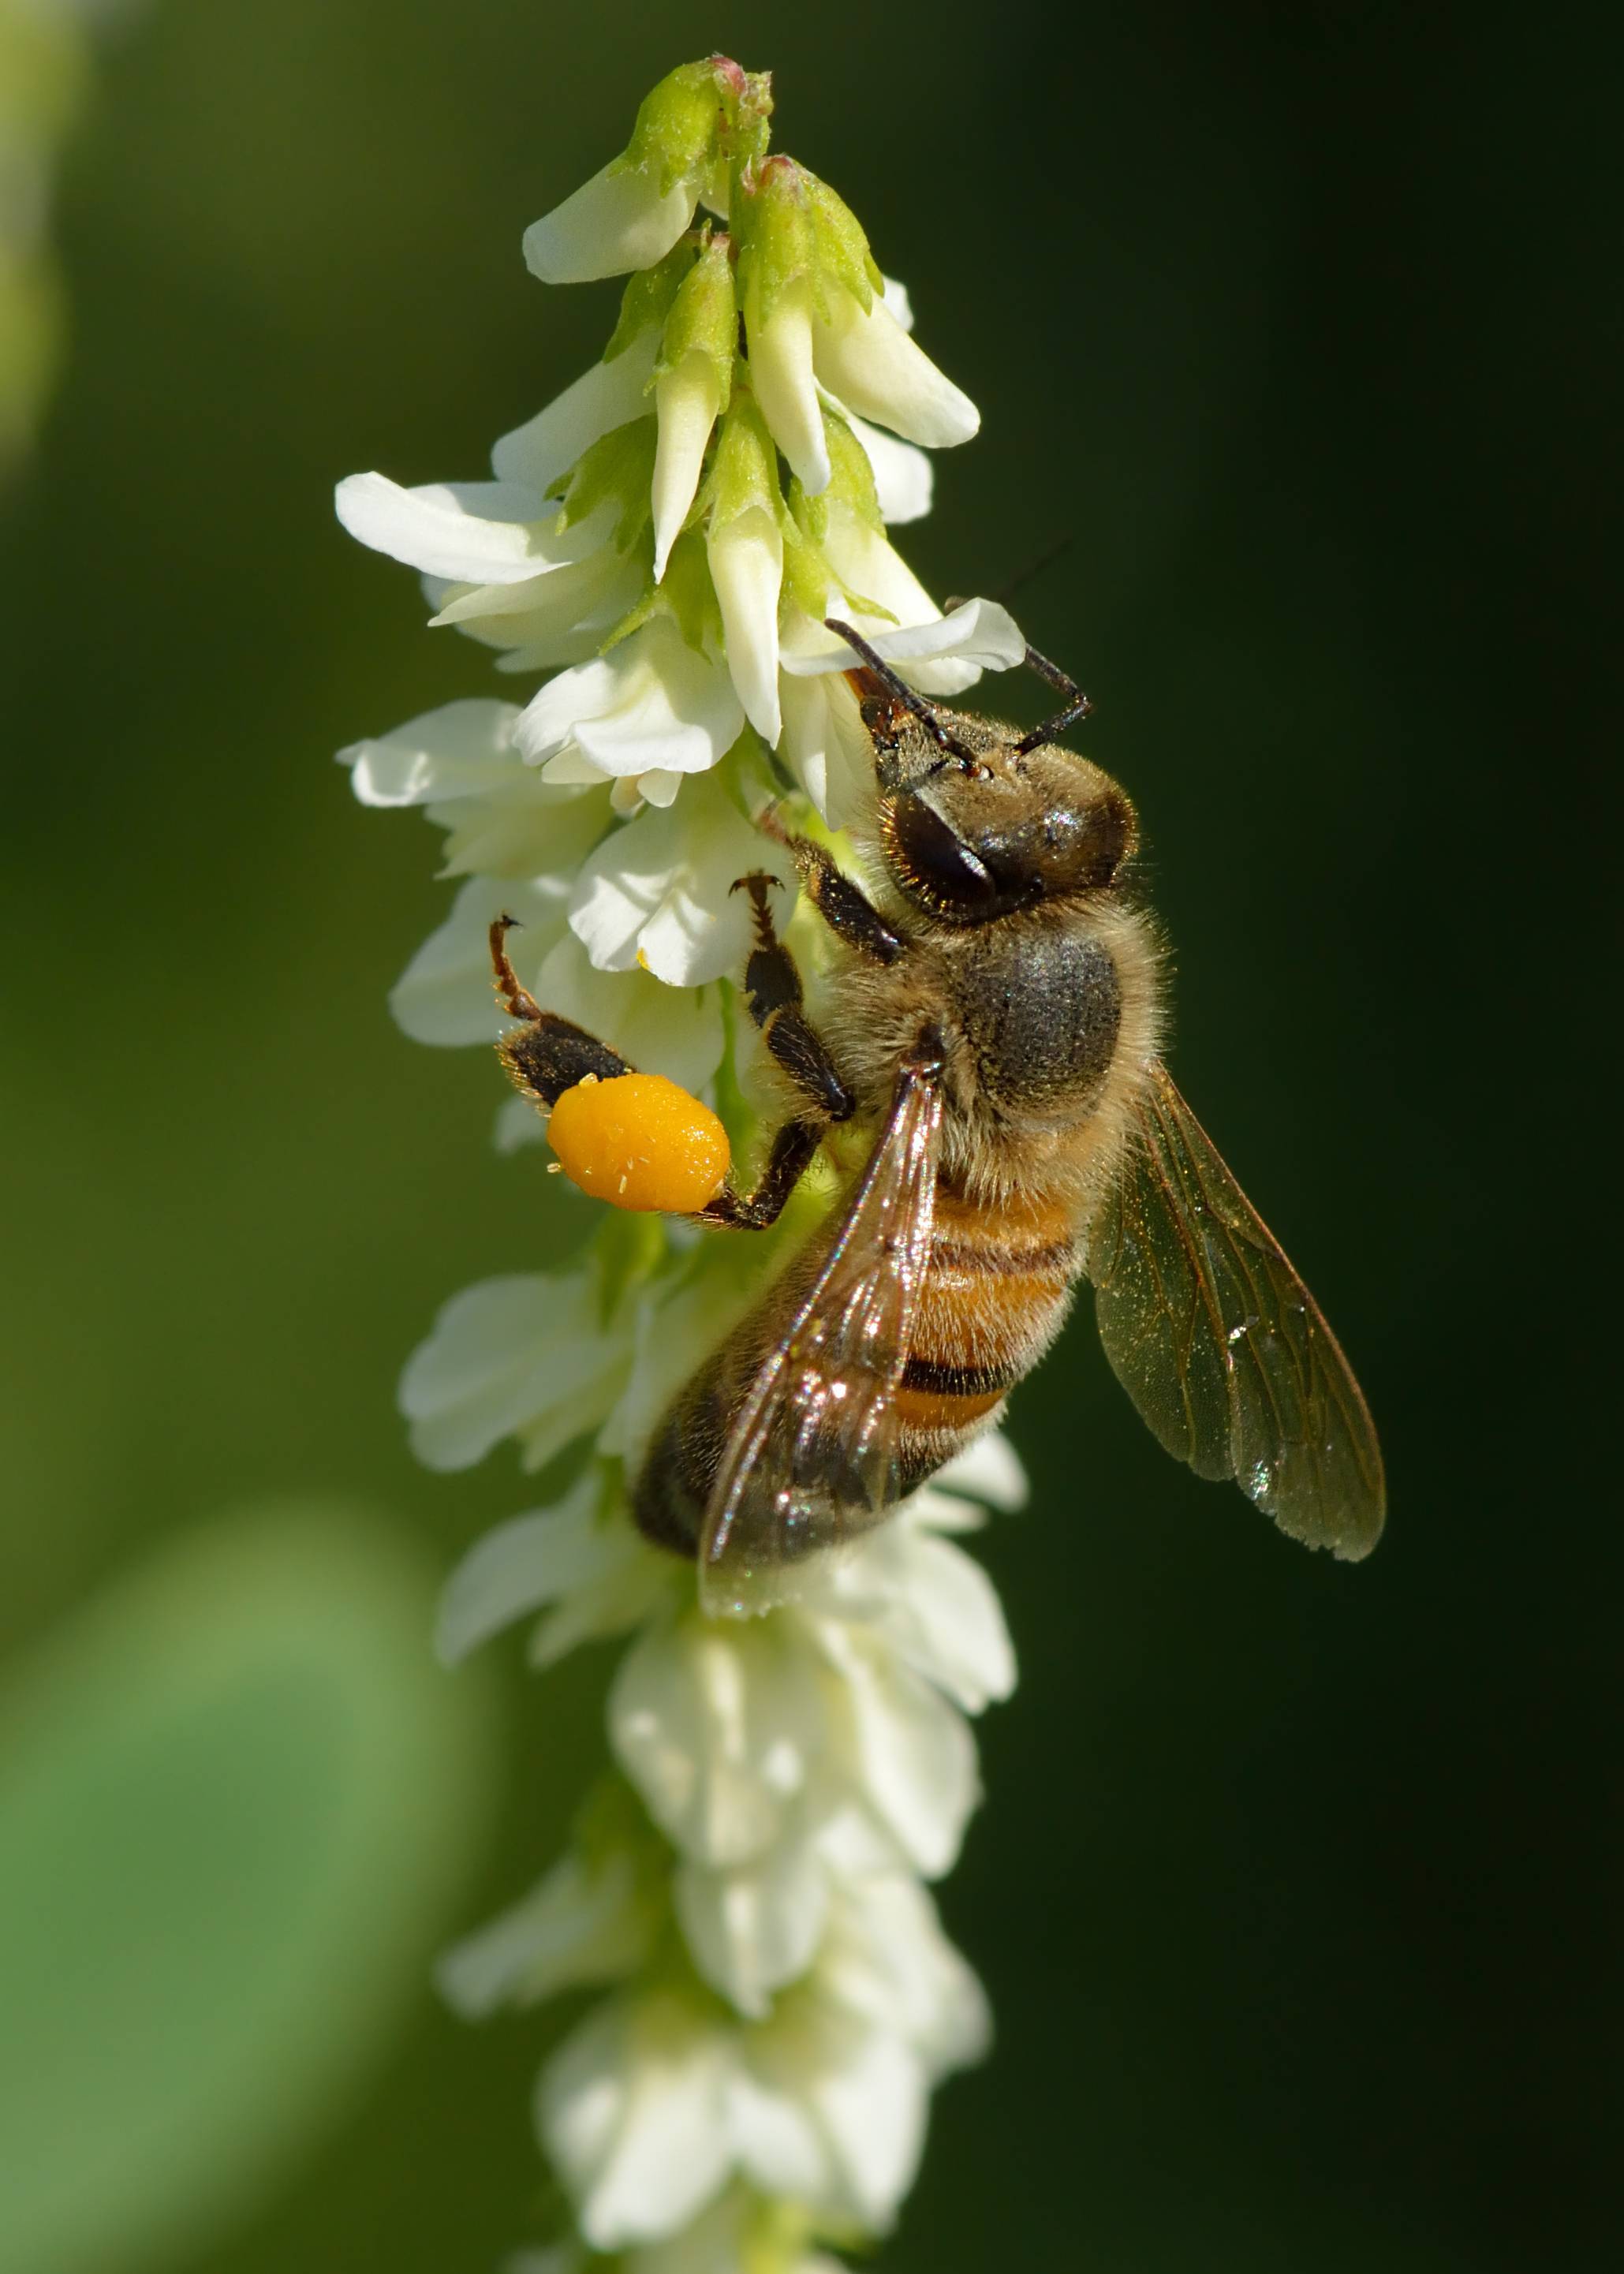 Лучшие медоносы для пчел: травы, цветы, кустарники и деревья